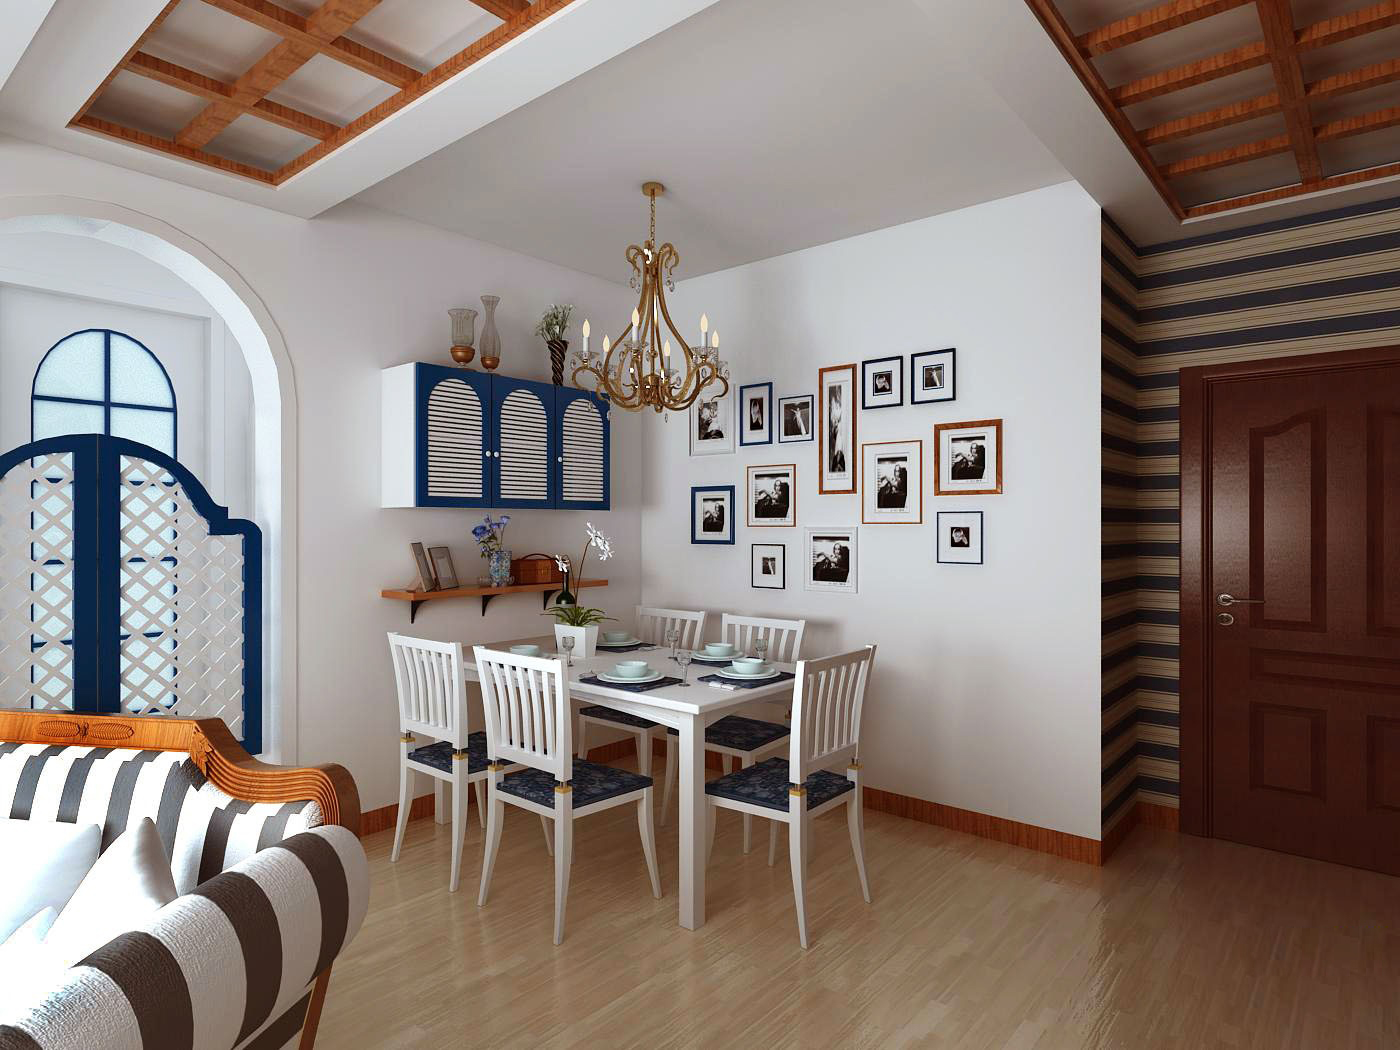 二居 餐厅图片来自合建装饰-二手房装修在地中海风格的分享